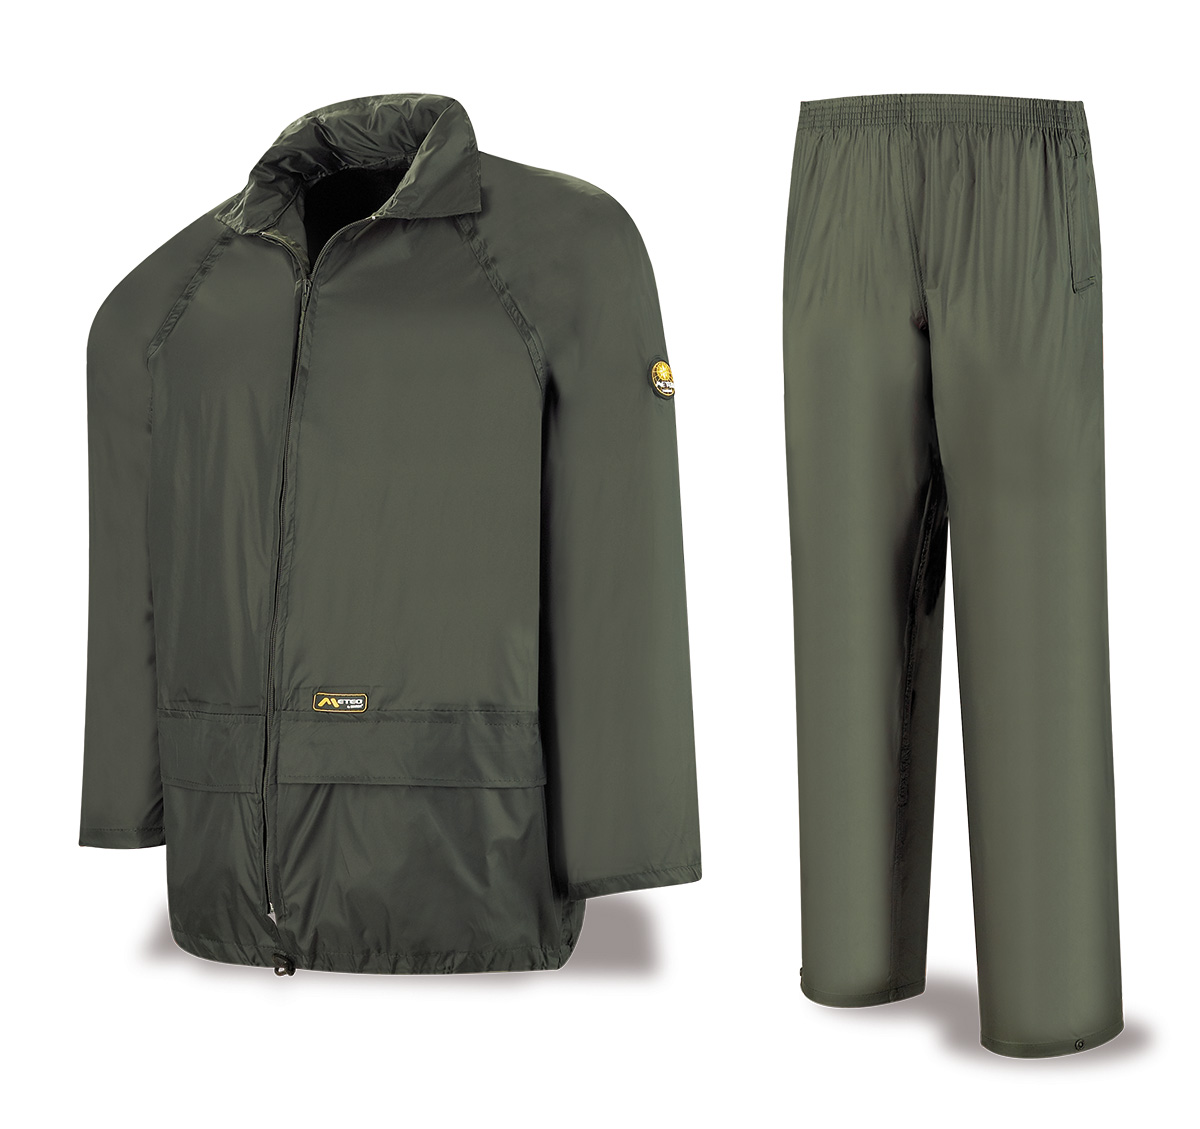 188-TATV Coats and Rain Gear Rain Gear Rain suit. BREATHABLE